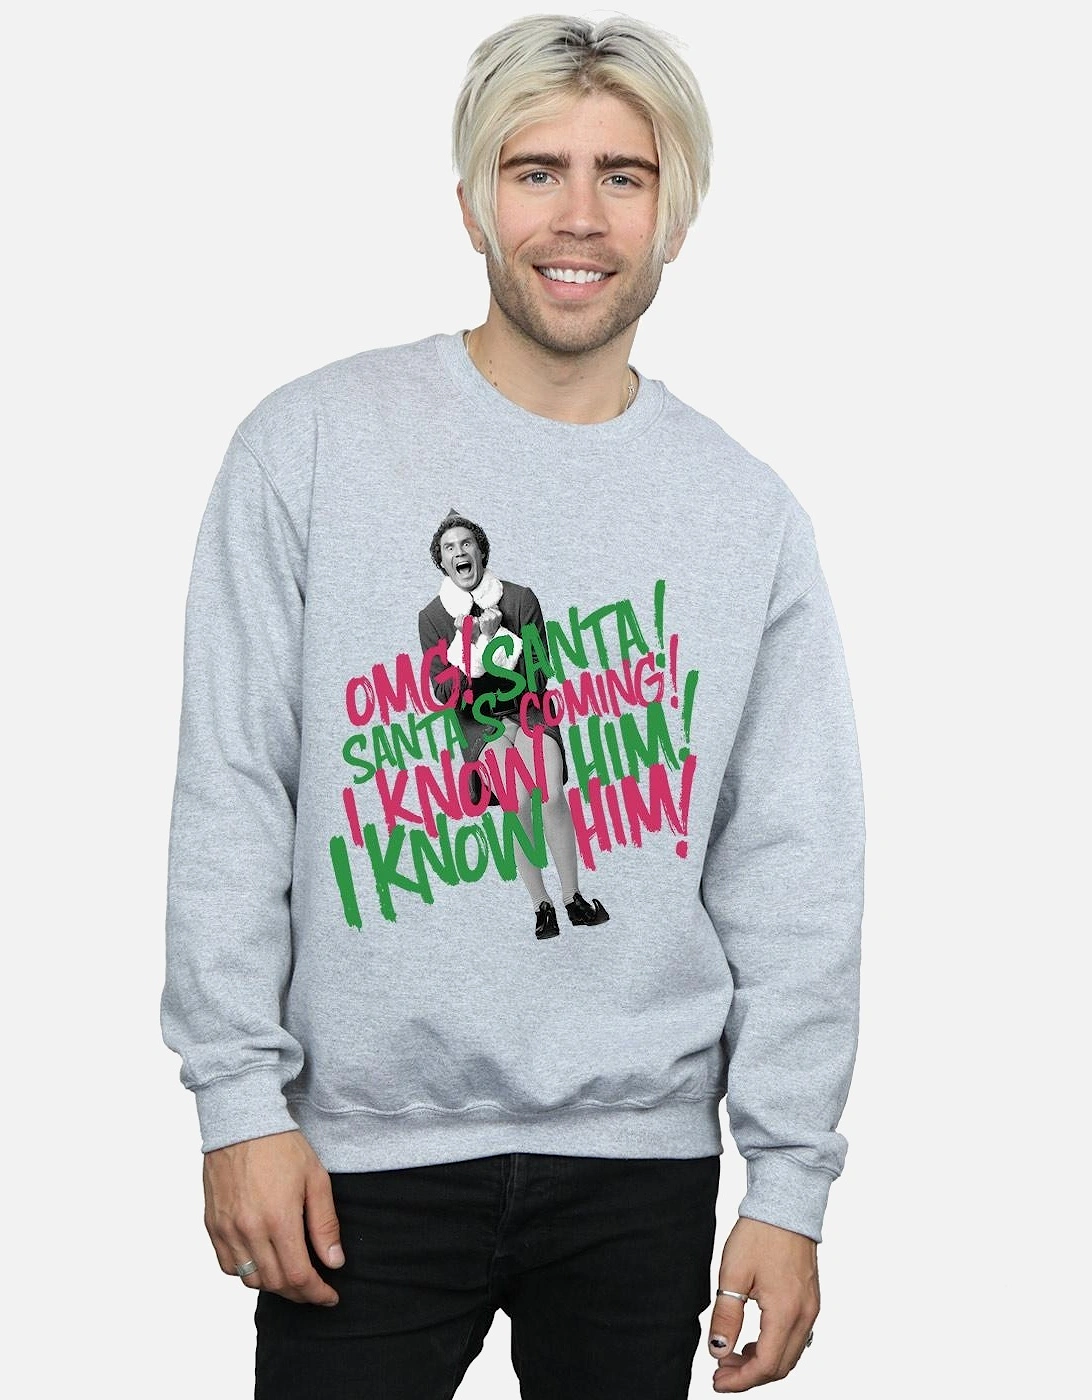 Mens Santa?'s Coming Sweatshirt